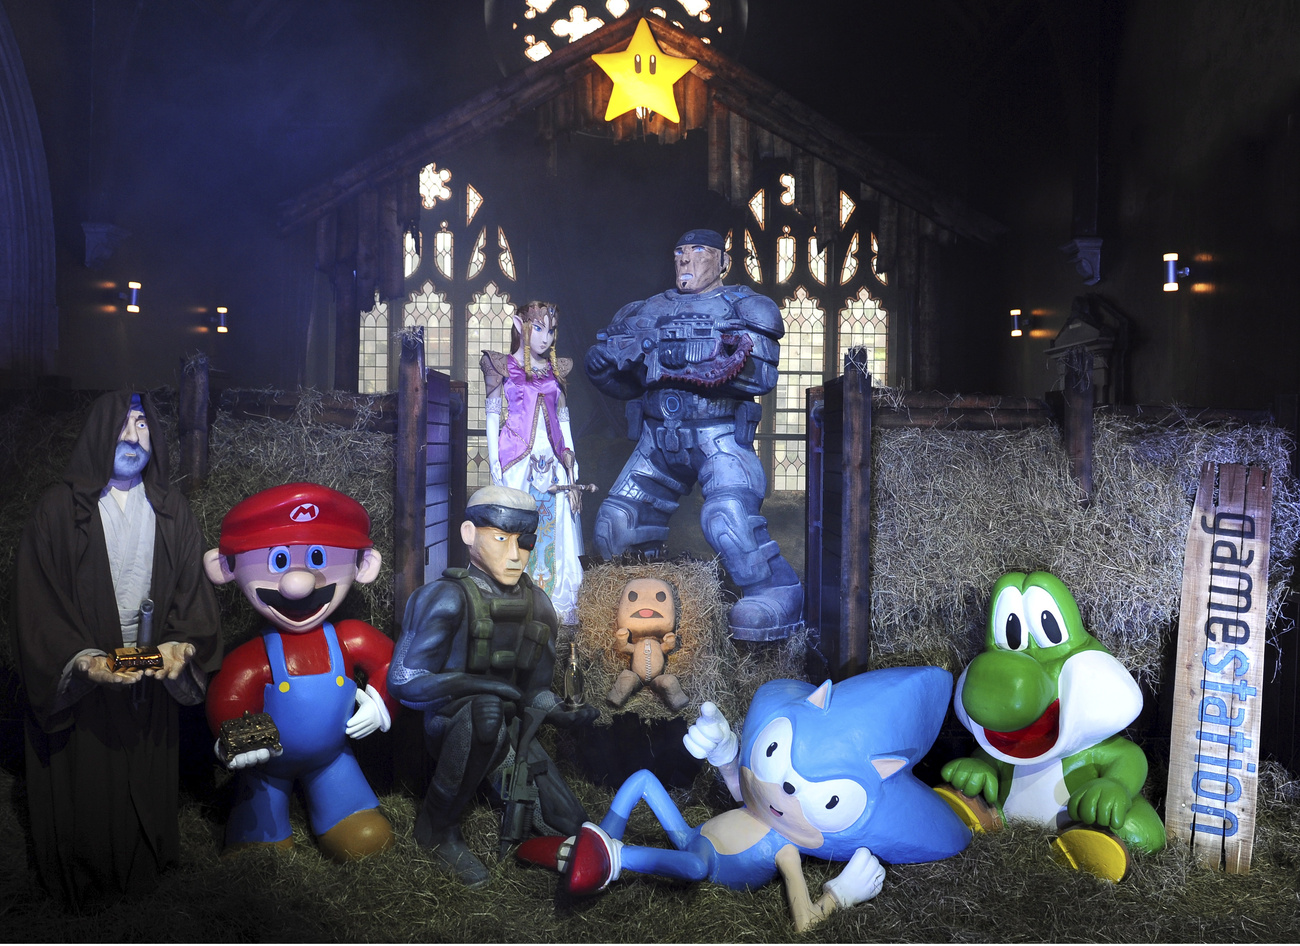 Ebben a betlehemes jelenetben az istálló állatai Sonic, a kék sündisznó és a dinoszauruszra emlékeztető, zöld Yoshi, aki barát, méghozzá Super Mario barátja 